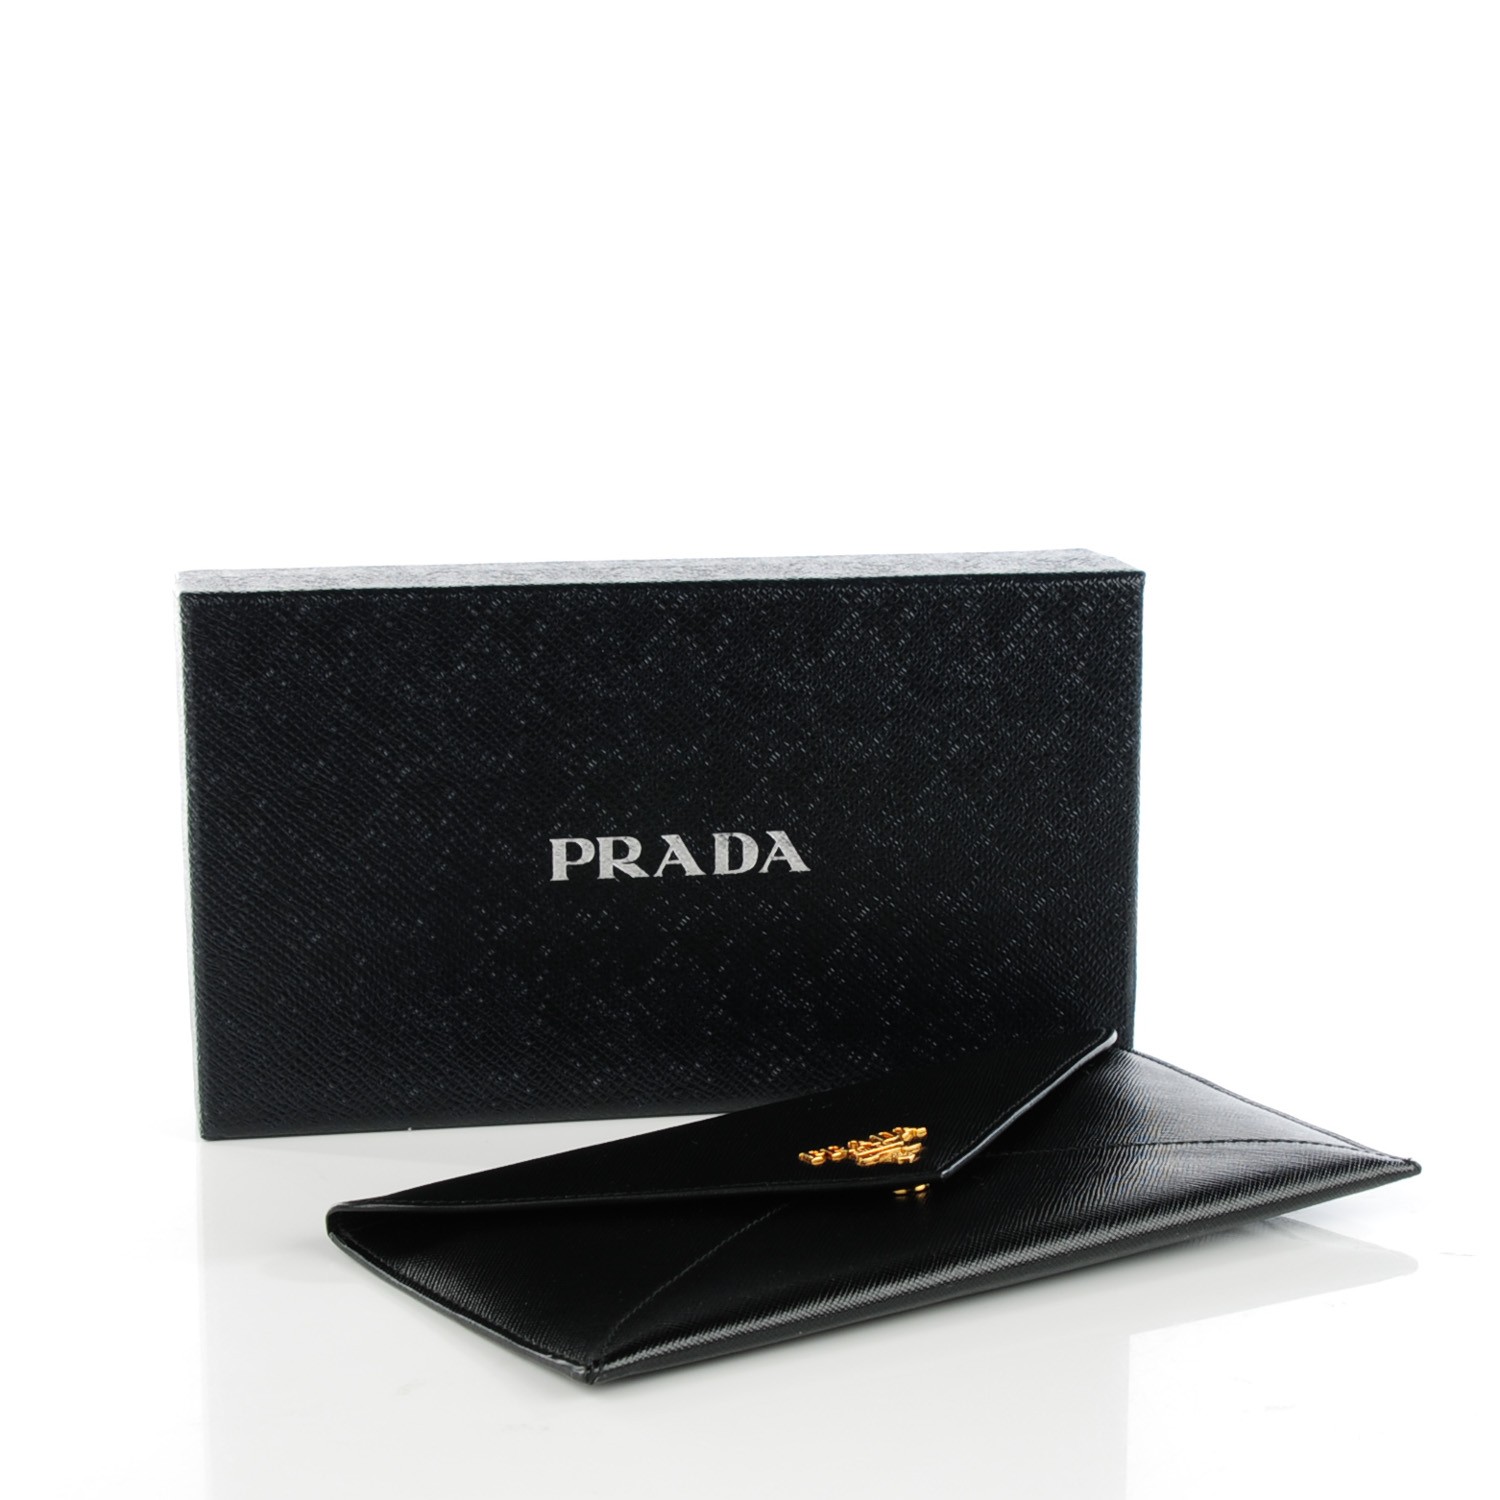 PRADA Saffiano Metal Envelope Wallet Nero Black 128445